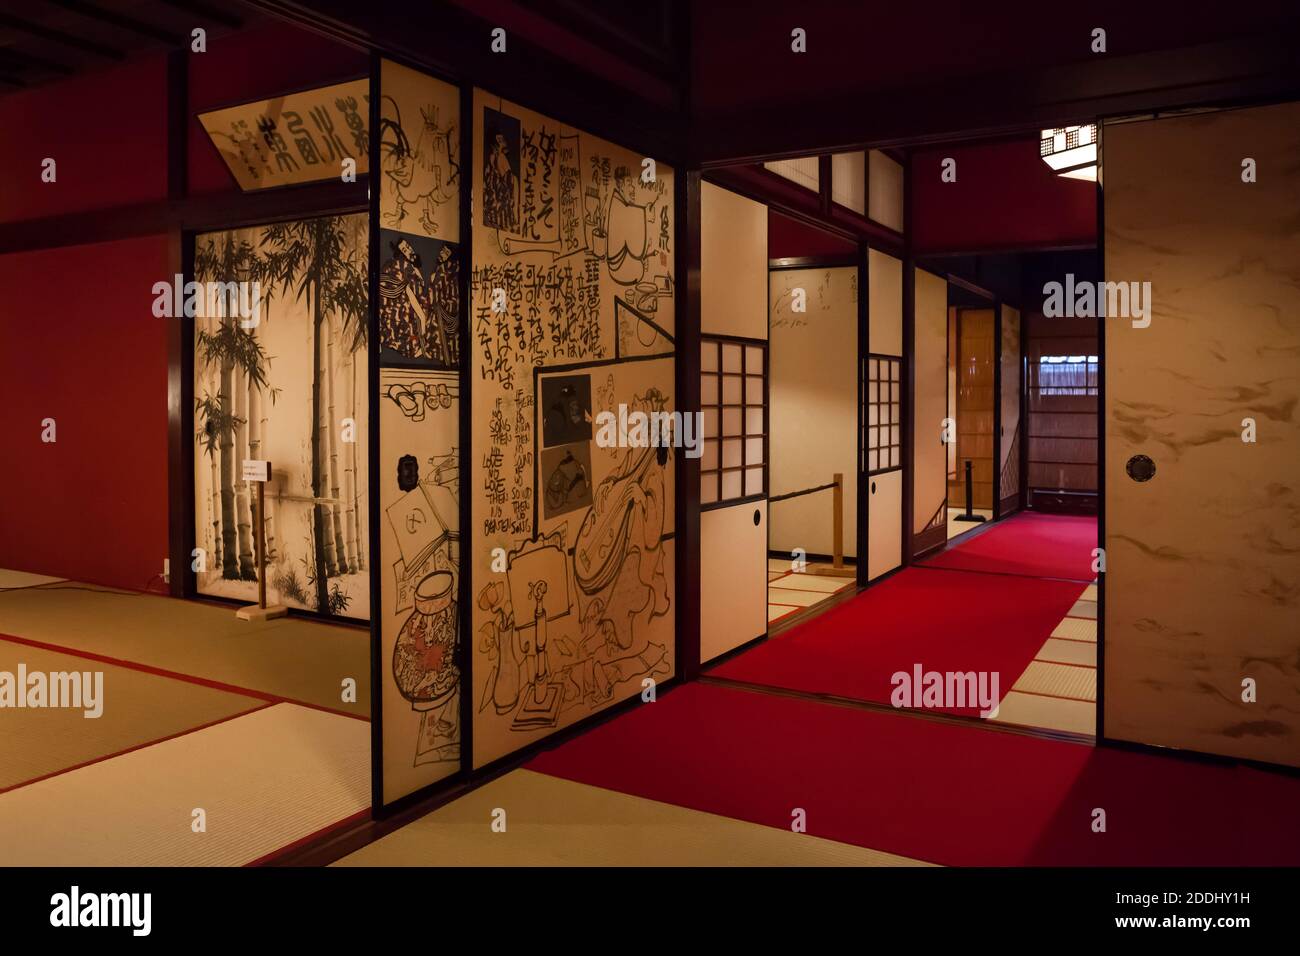 Vue horizontale de l'intérieur de la maison de thé Kaikaro Geisha à Higashi-chaga-gai, dans le district de Geisha, Kanazawa, Japon Banque D'Images